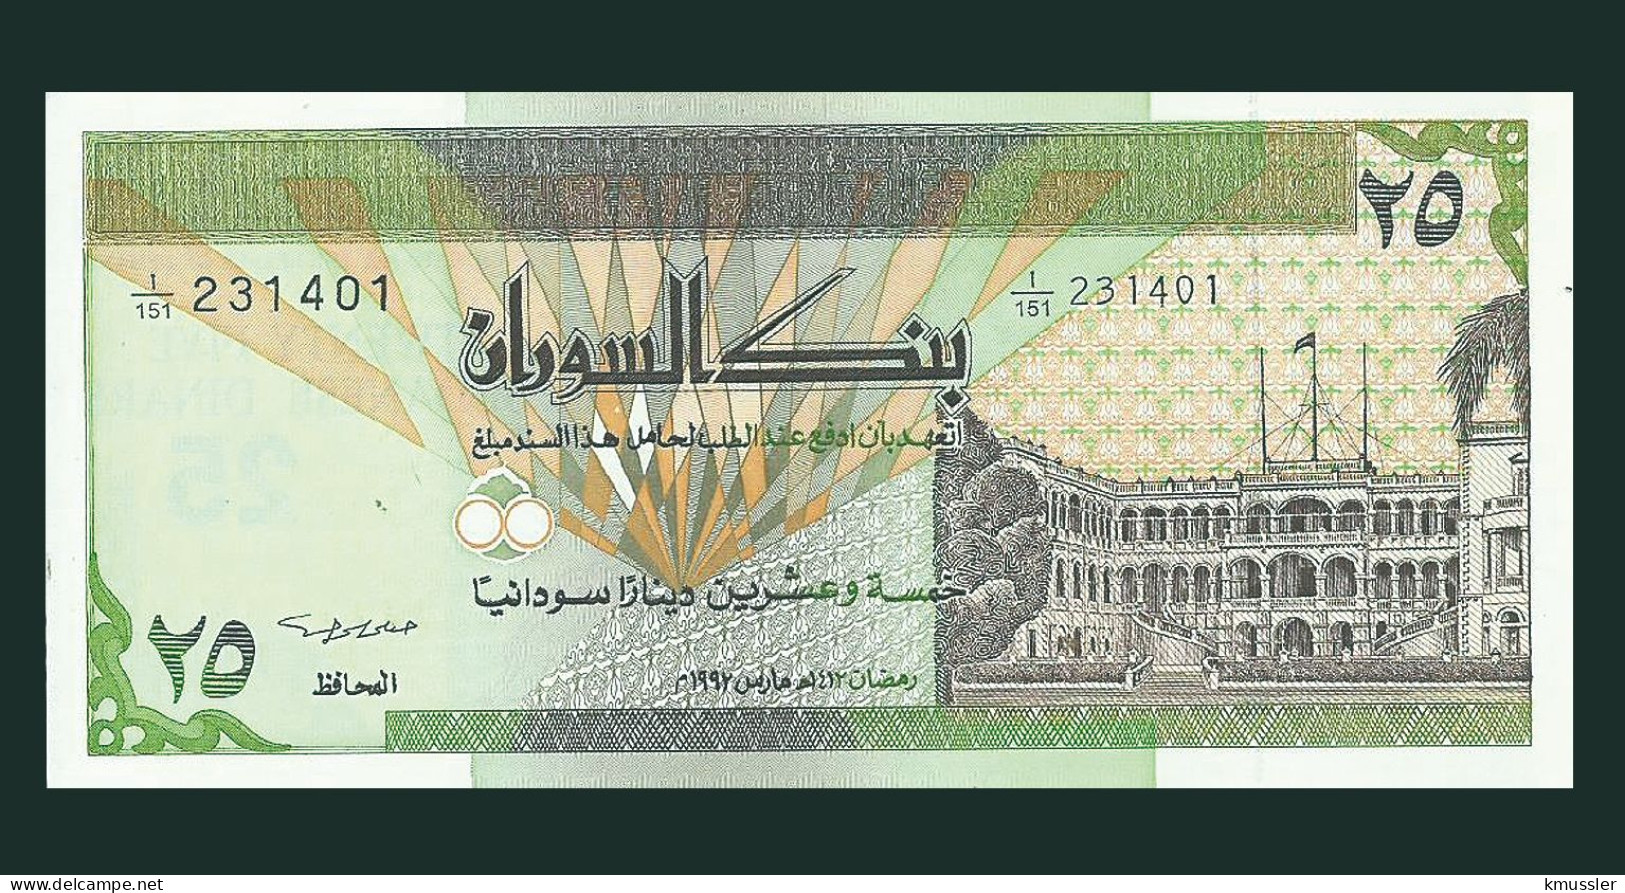 # # # Banknote Aus Sudan 100 Dinare 1992 (P-53) UNC # # # - Soedan